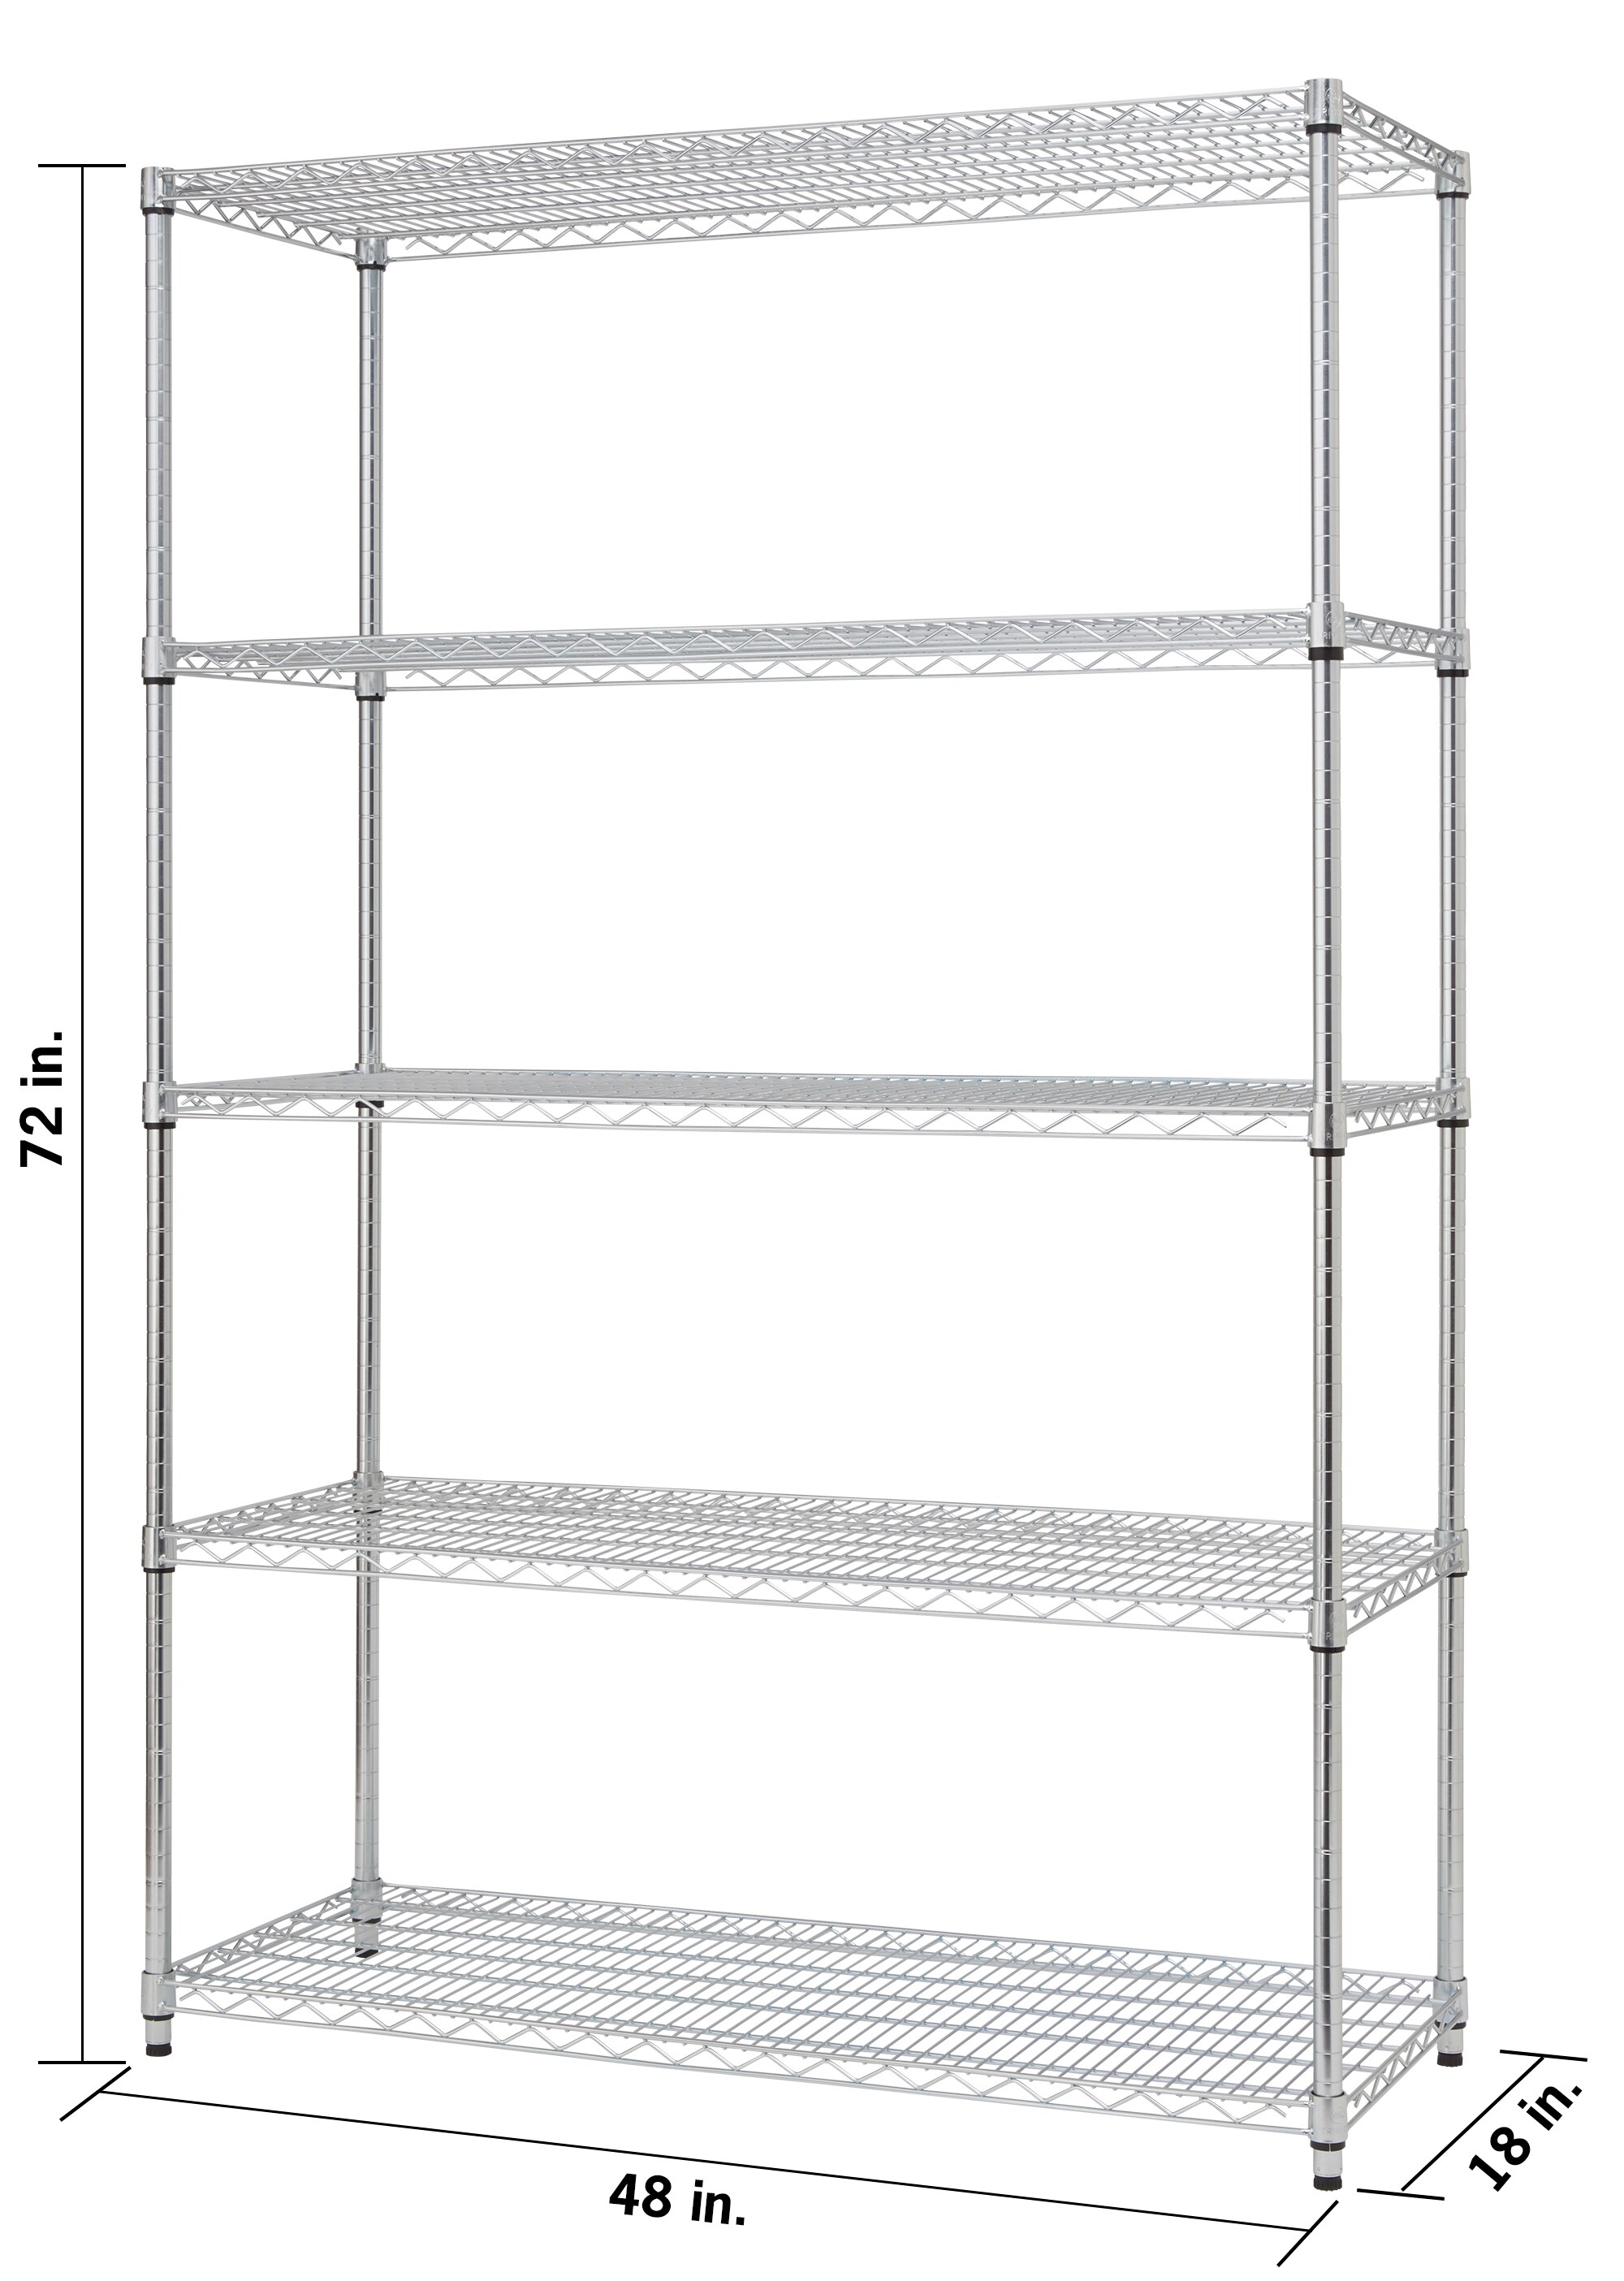 TRINITY 48x18 Shelf Liners Set of 4